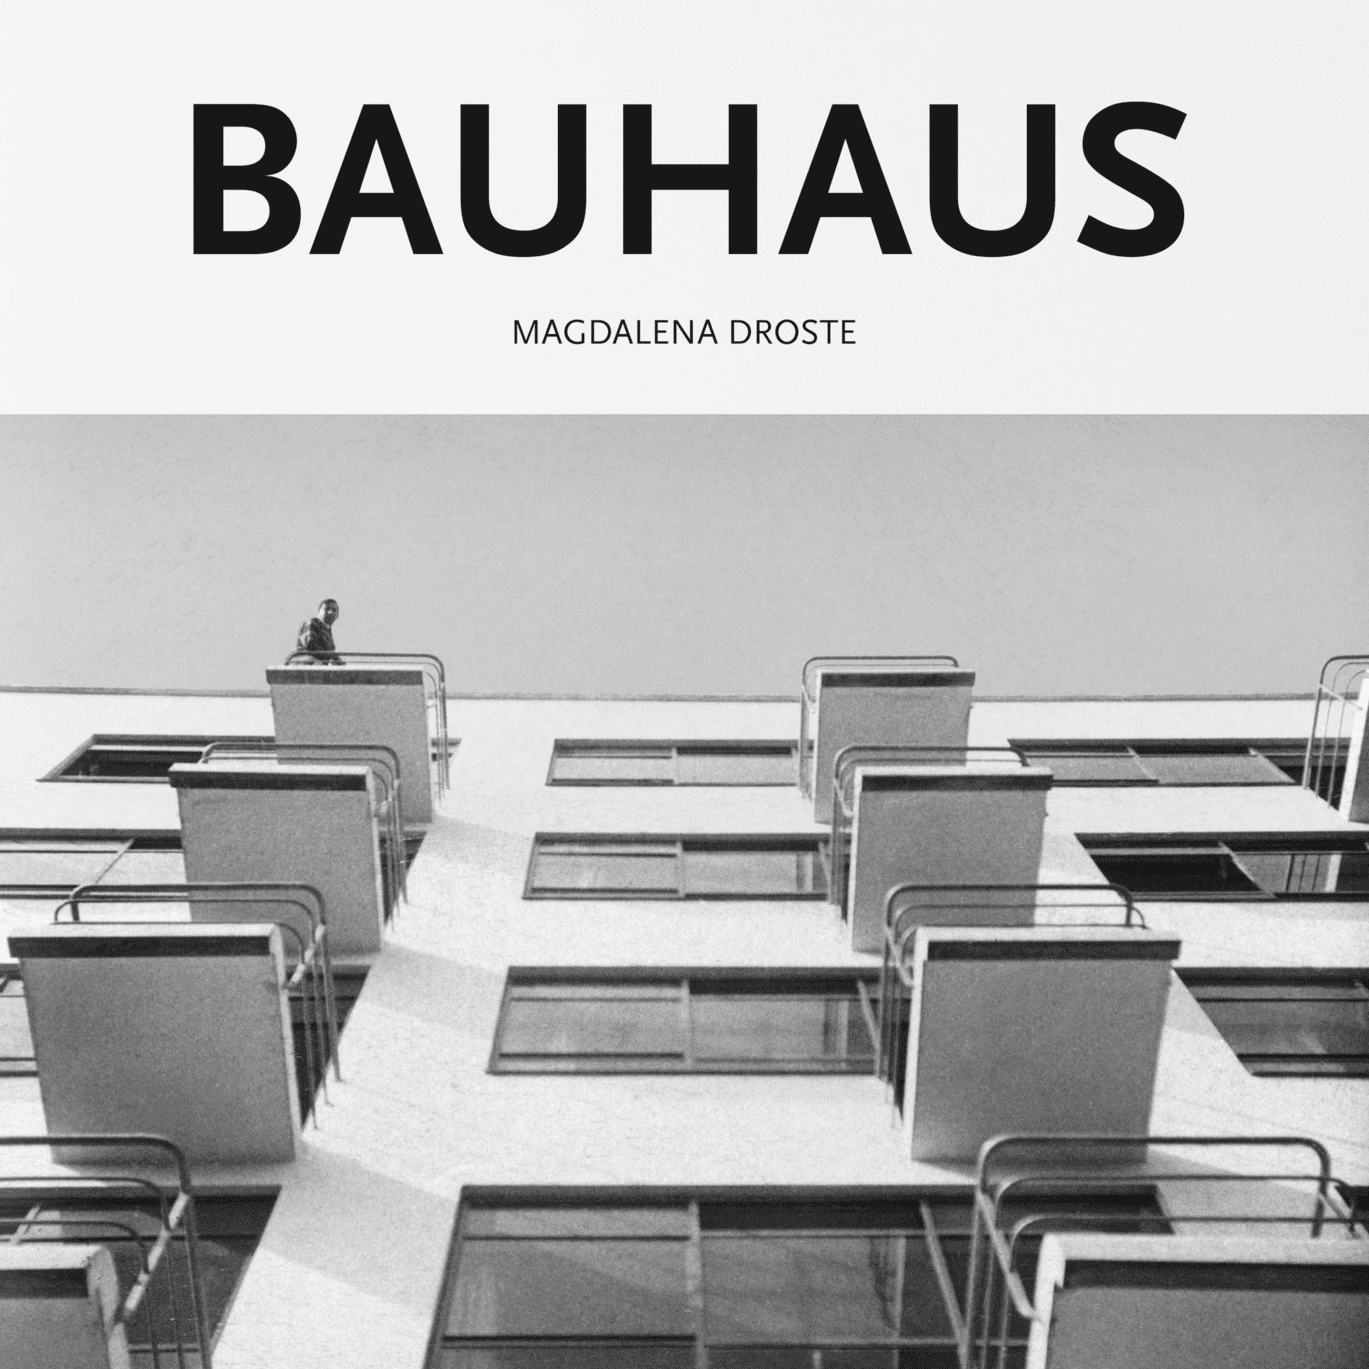 Bauhaus - Zamanın Tasarımları resmi